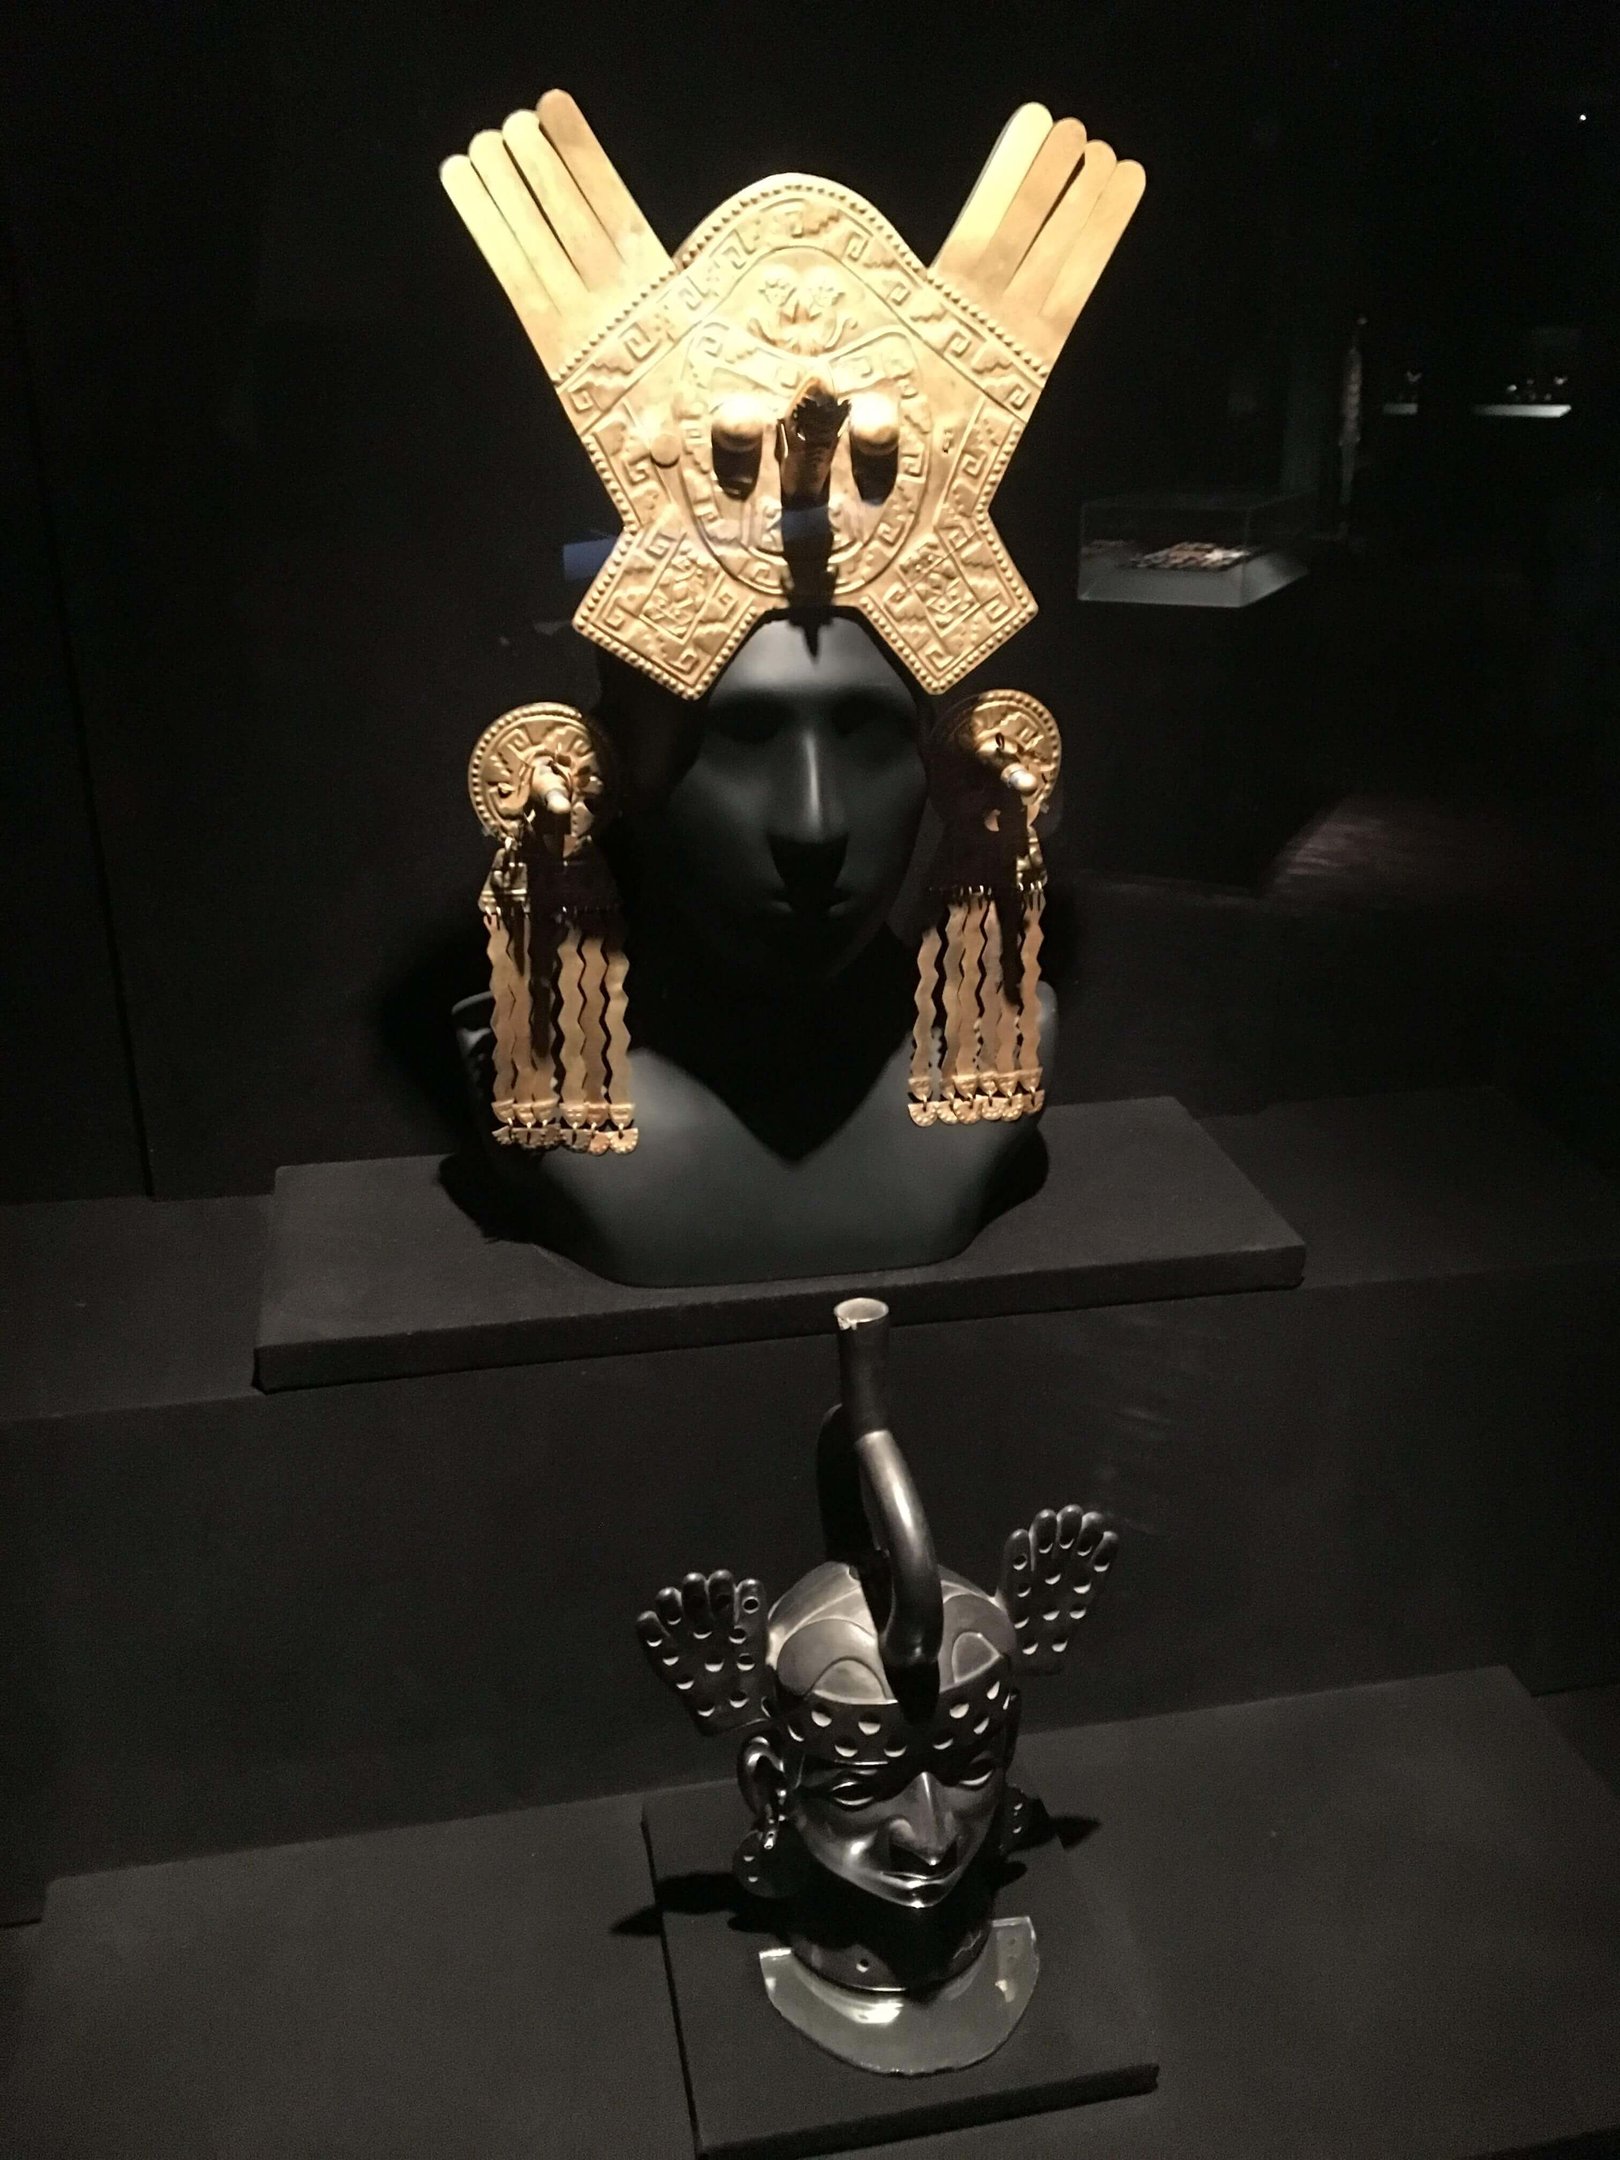 A riqueza dos ornamentos em ouro, minério desejado pelos espanhóis que colonizaram o país